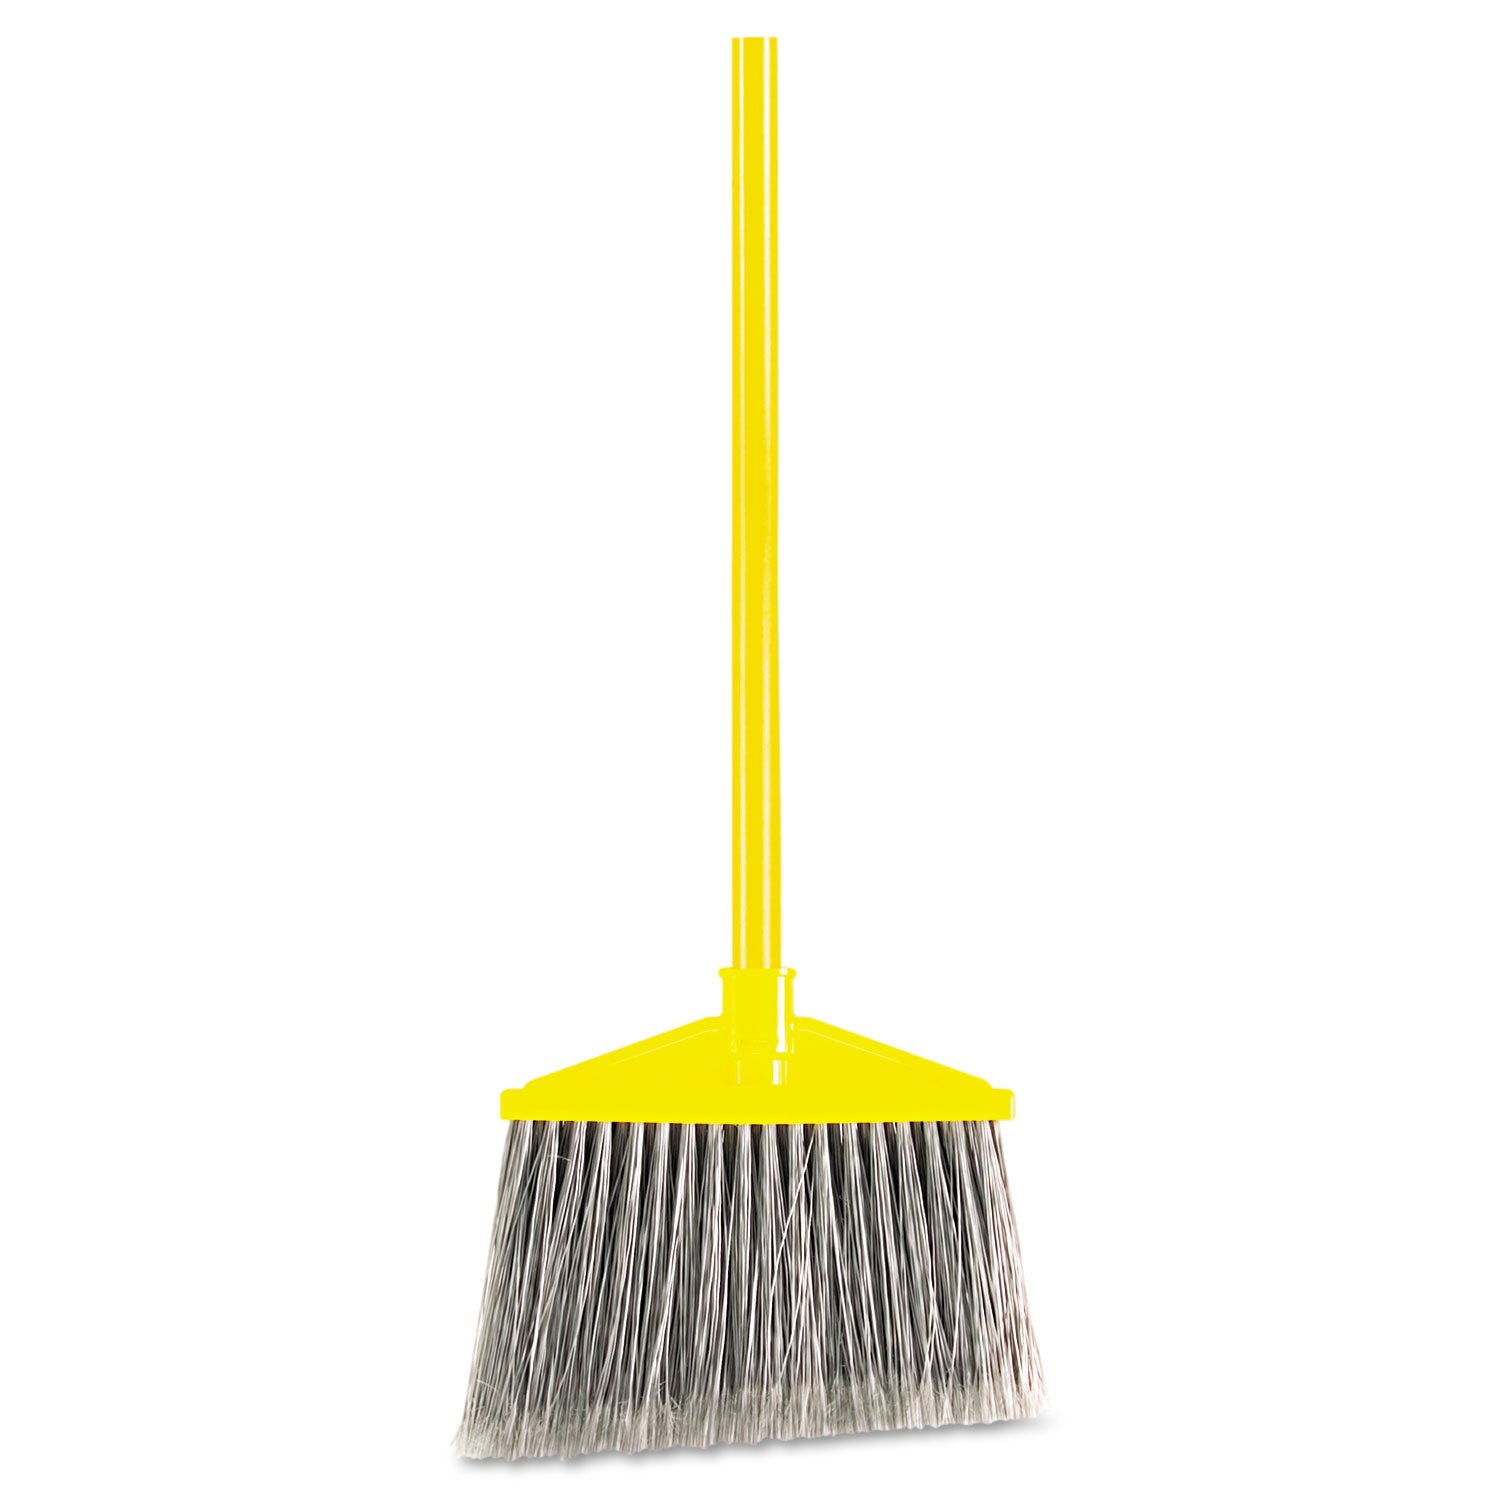 7920014588208, Angled Large Broom, 46.78" Handle, Gray/Yellow - 